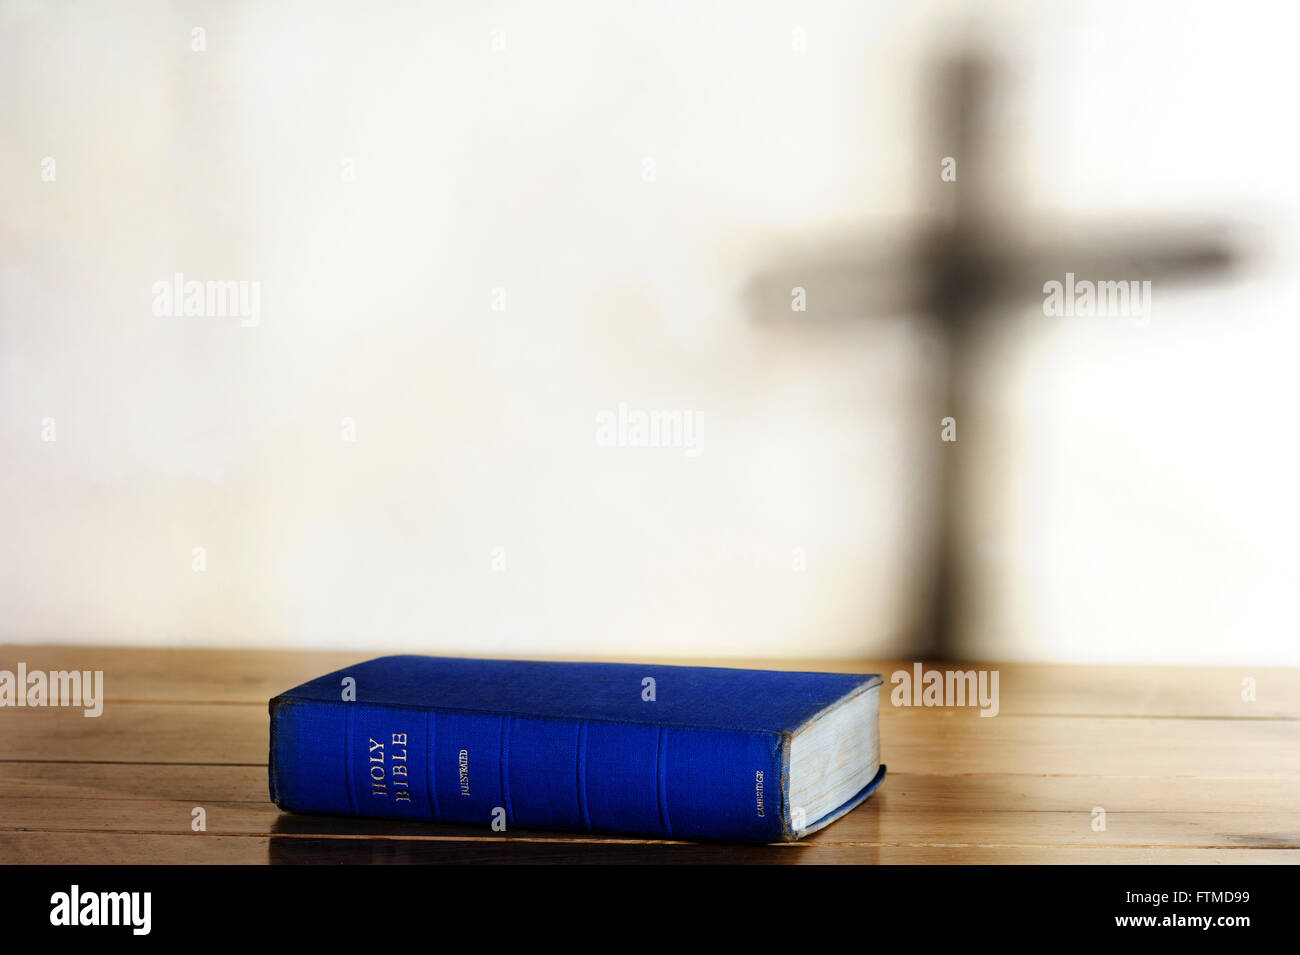 Vecchia copia della Sacra Bibbia giacente su una tabella con l'ombra di una croce sul background. Foto Stock